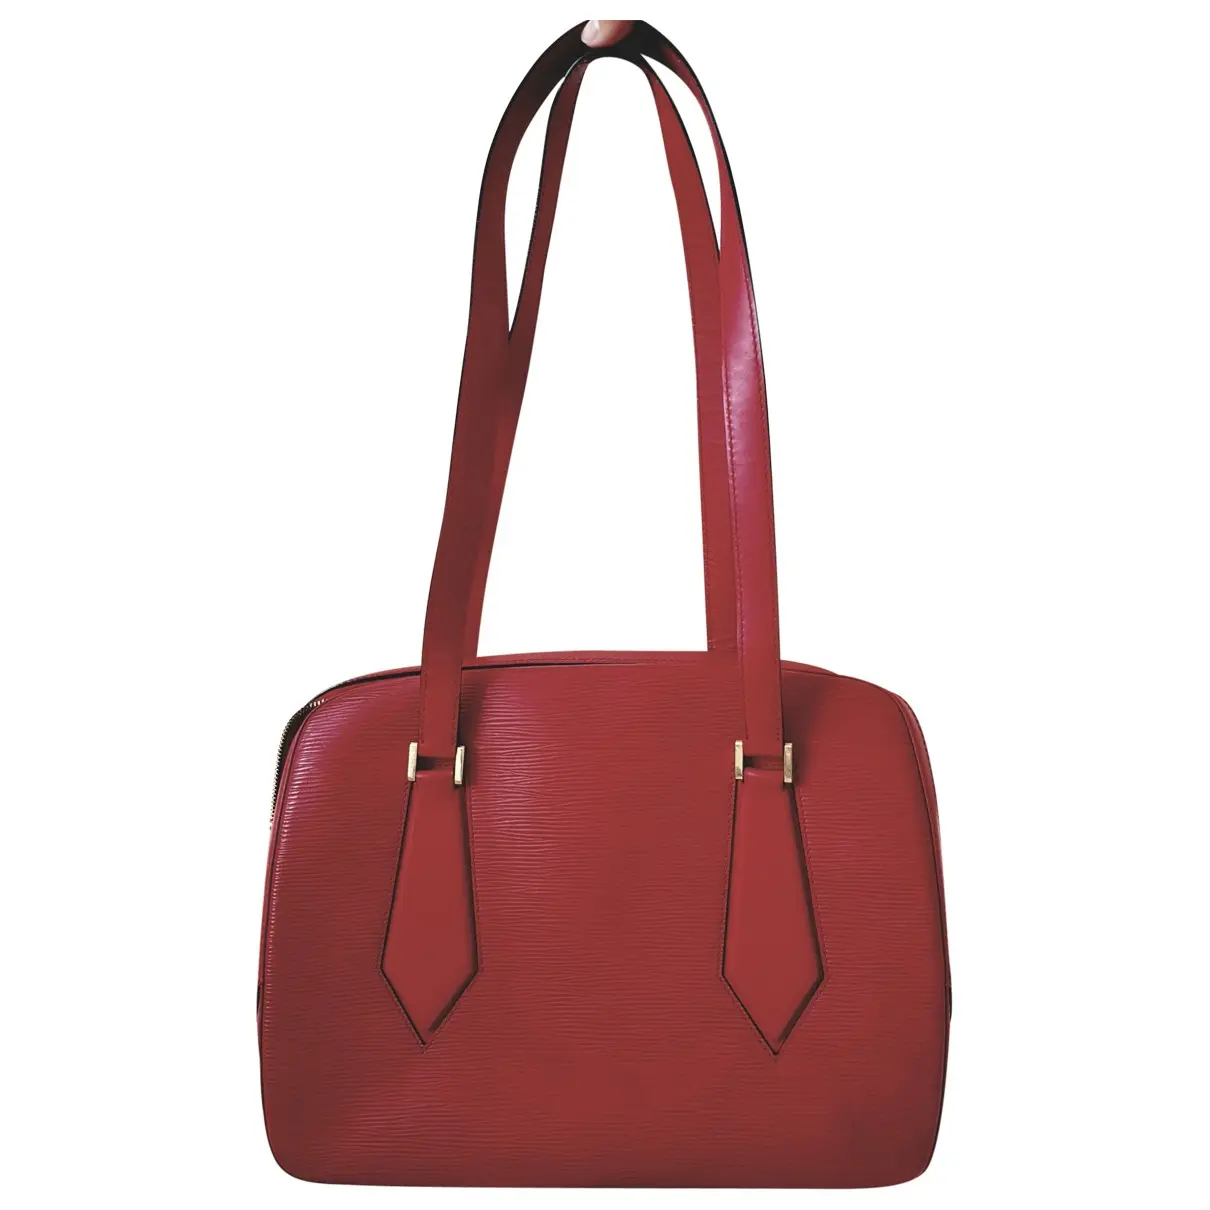 Sablon leather handbag Louis Vuitton - Vintage